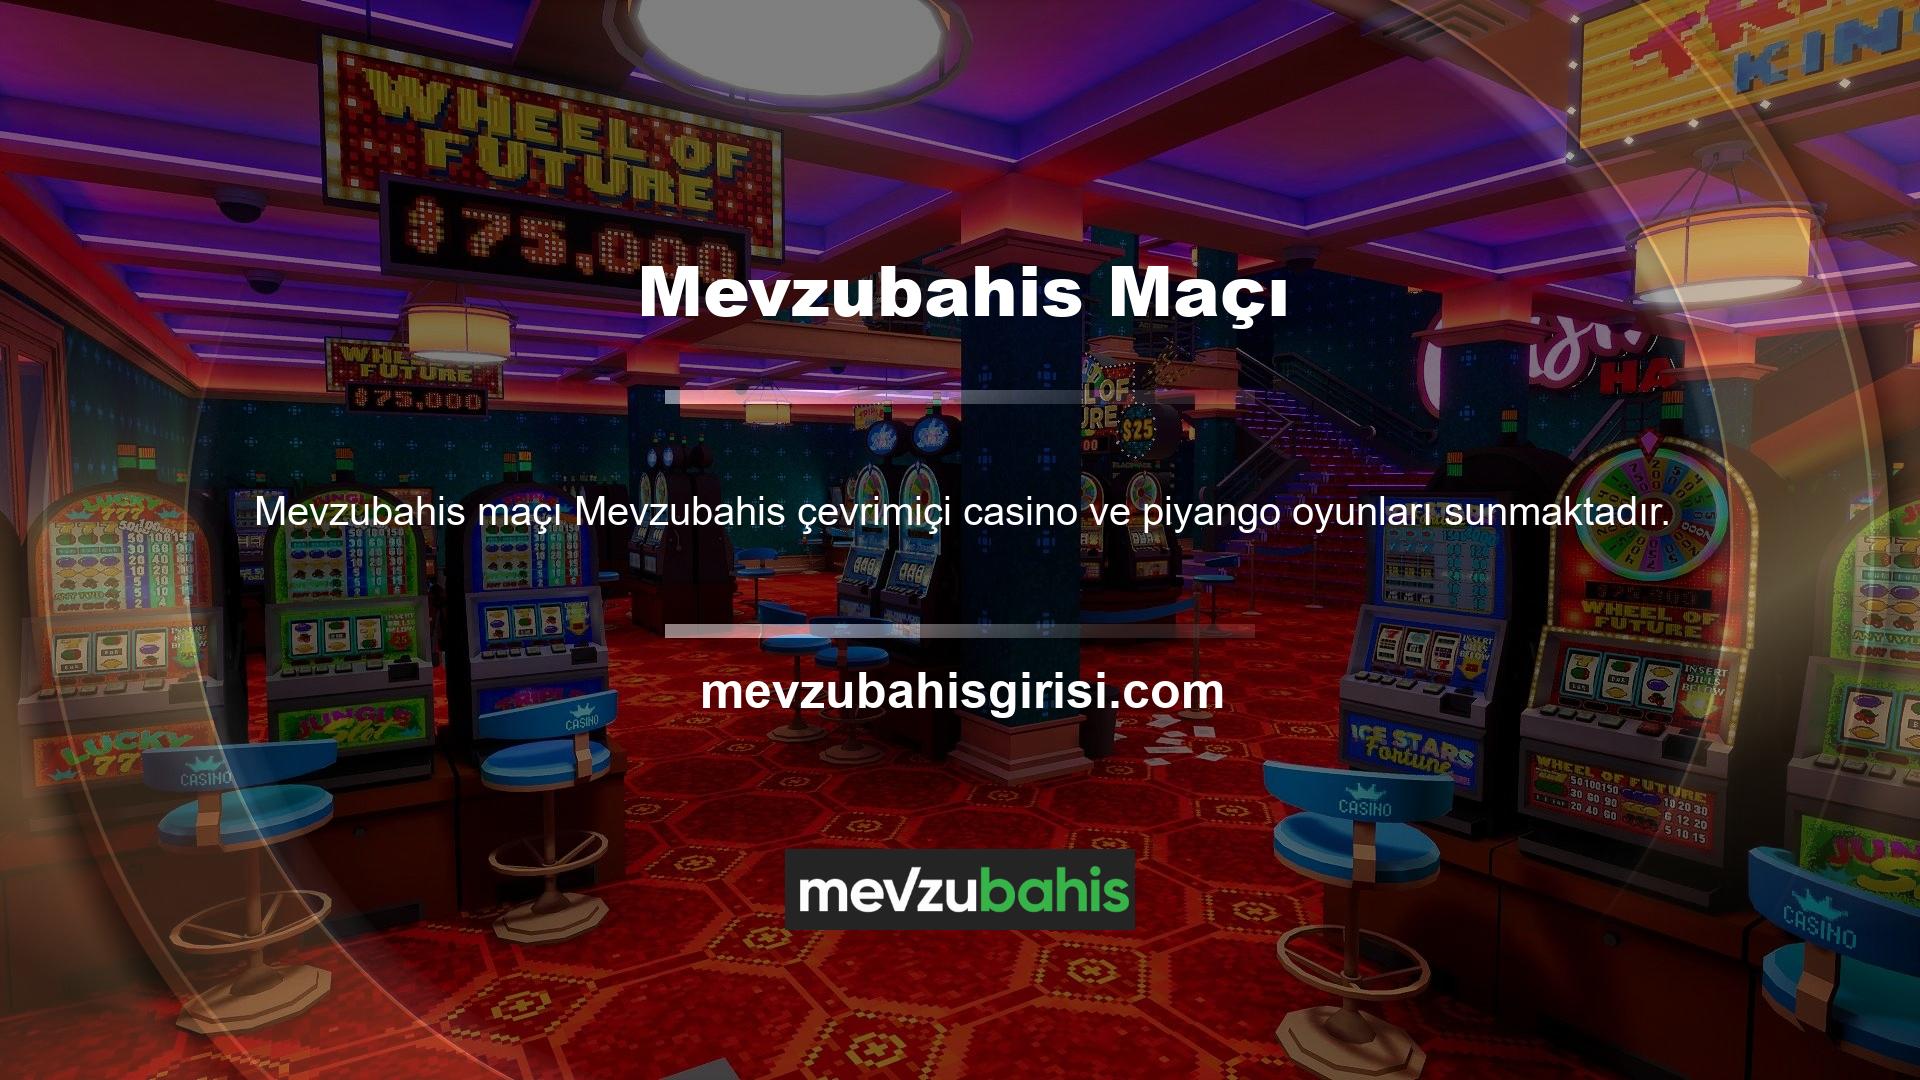 Mevzubahis Casino Games'te kullanıcılara çok çeşitli oyunlar sunulmaktadır